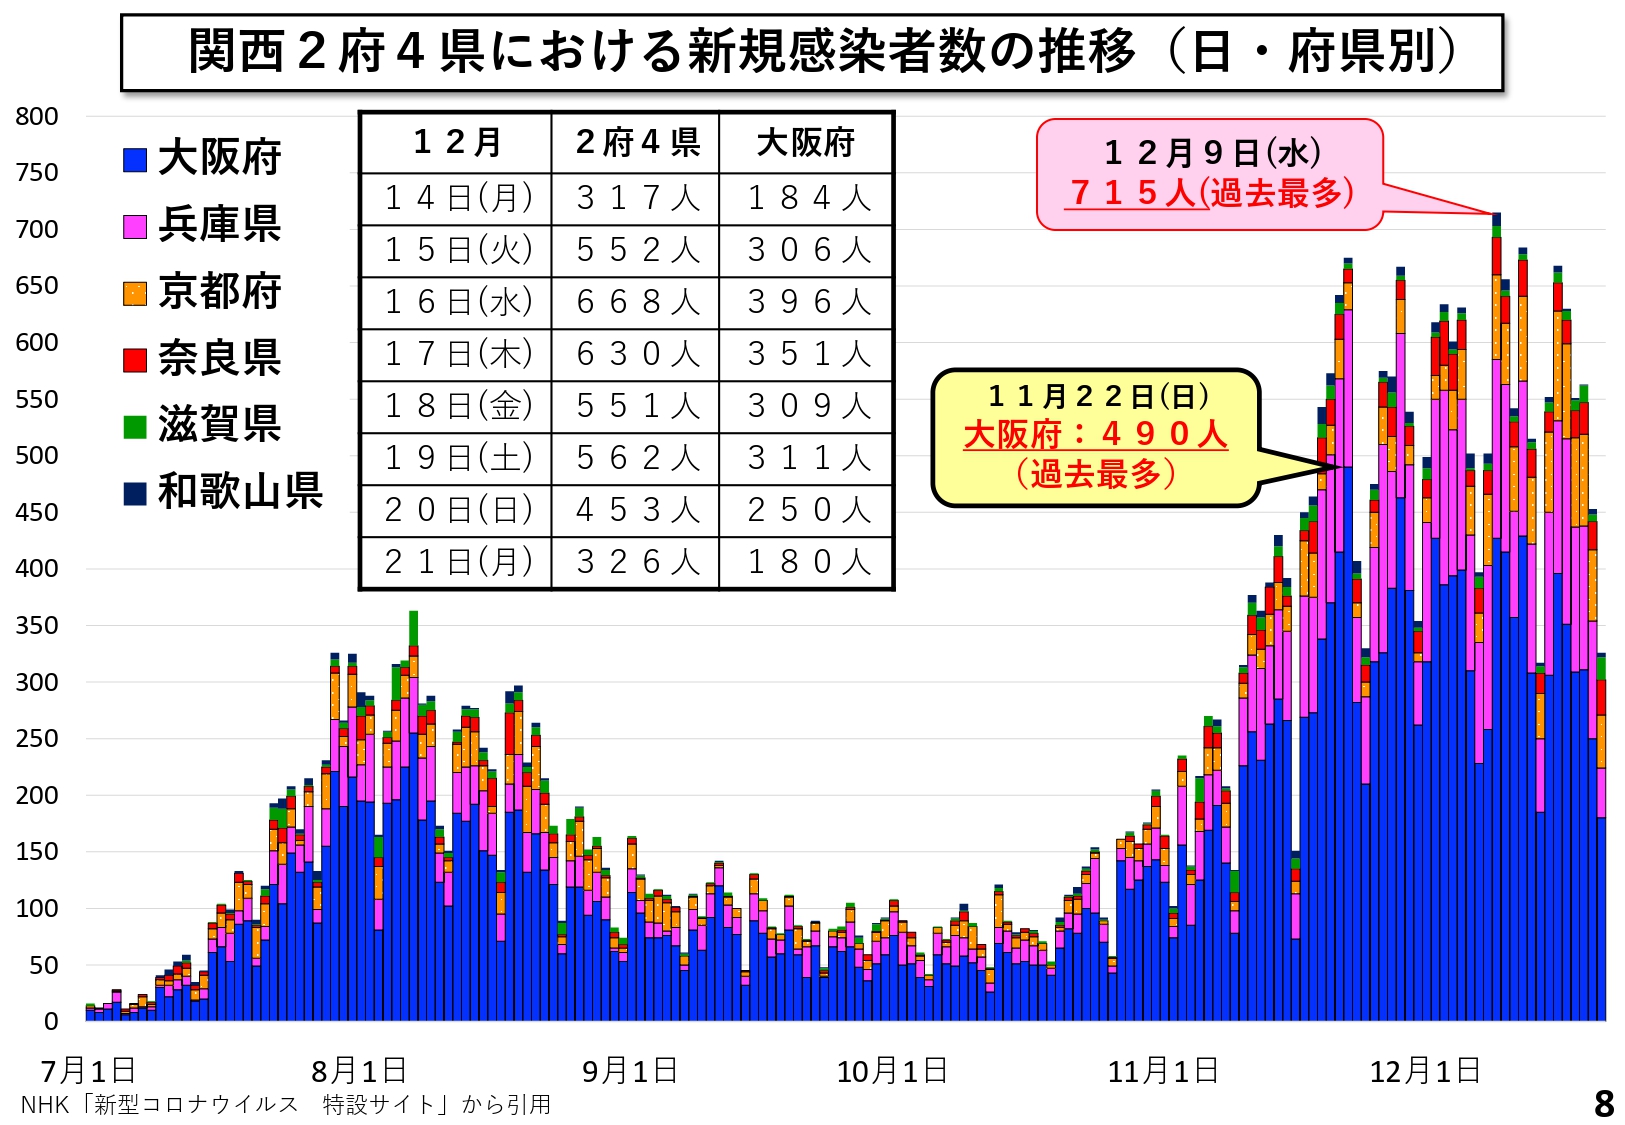 関西2府4県における新規感染者数の推移（日・府県別）